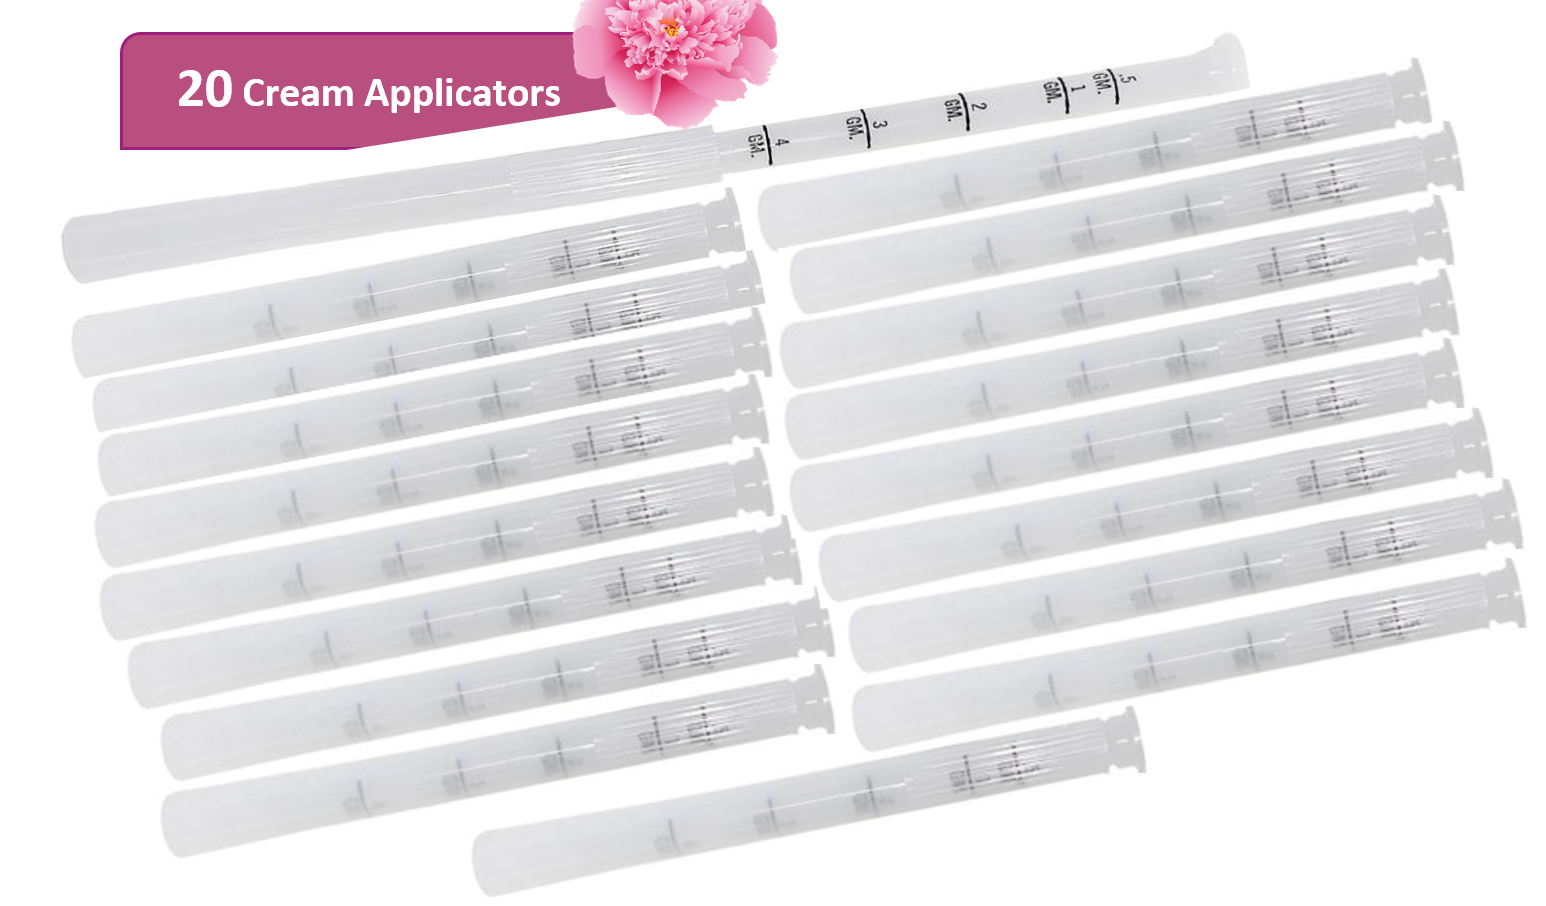 Disposable Plastic Vaginal Cream Applicators - With Dosage Measurements